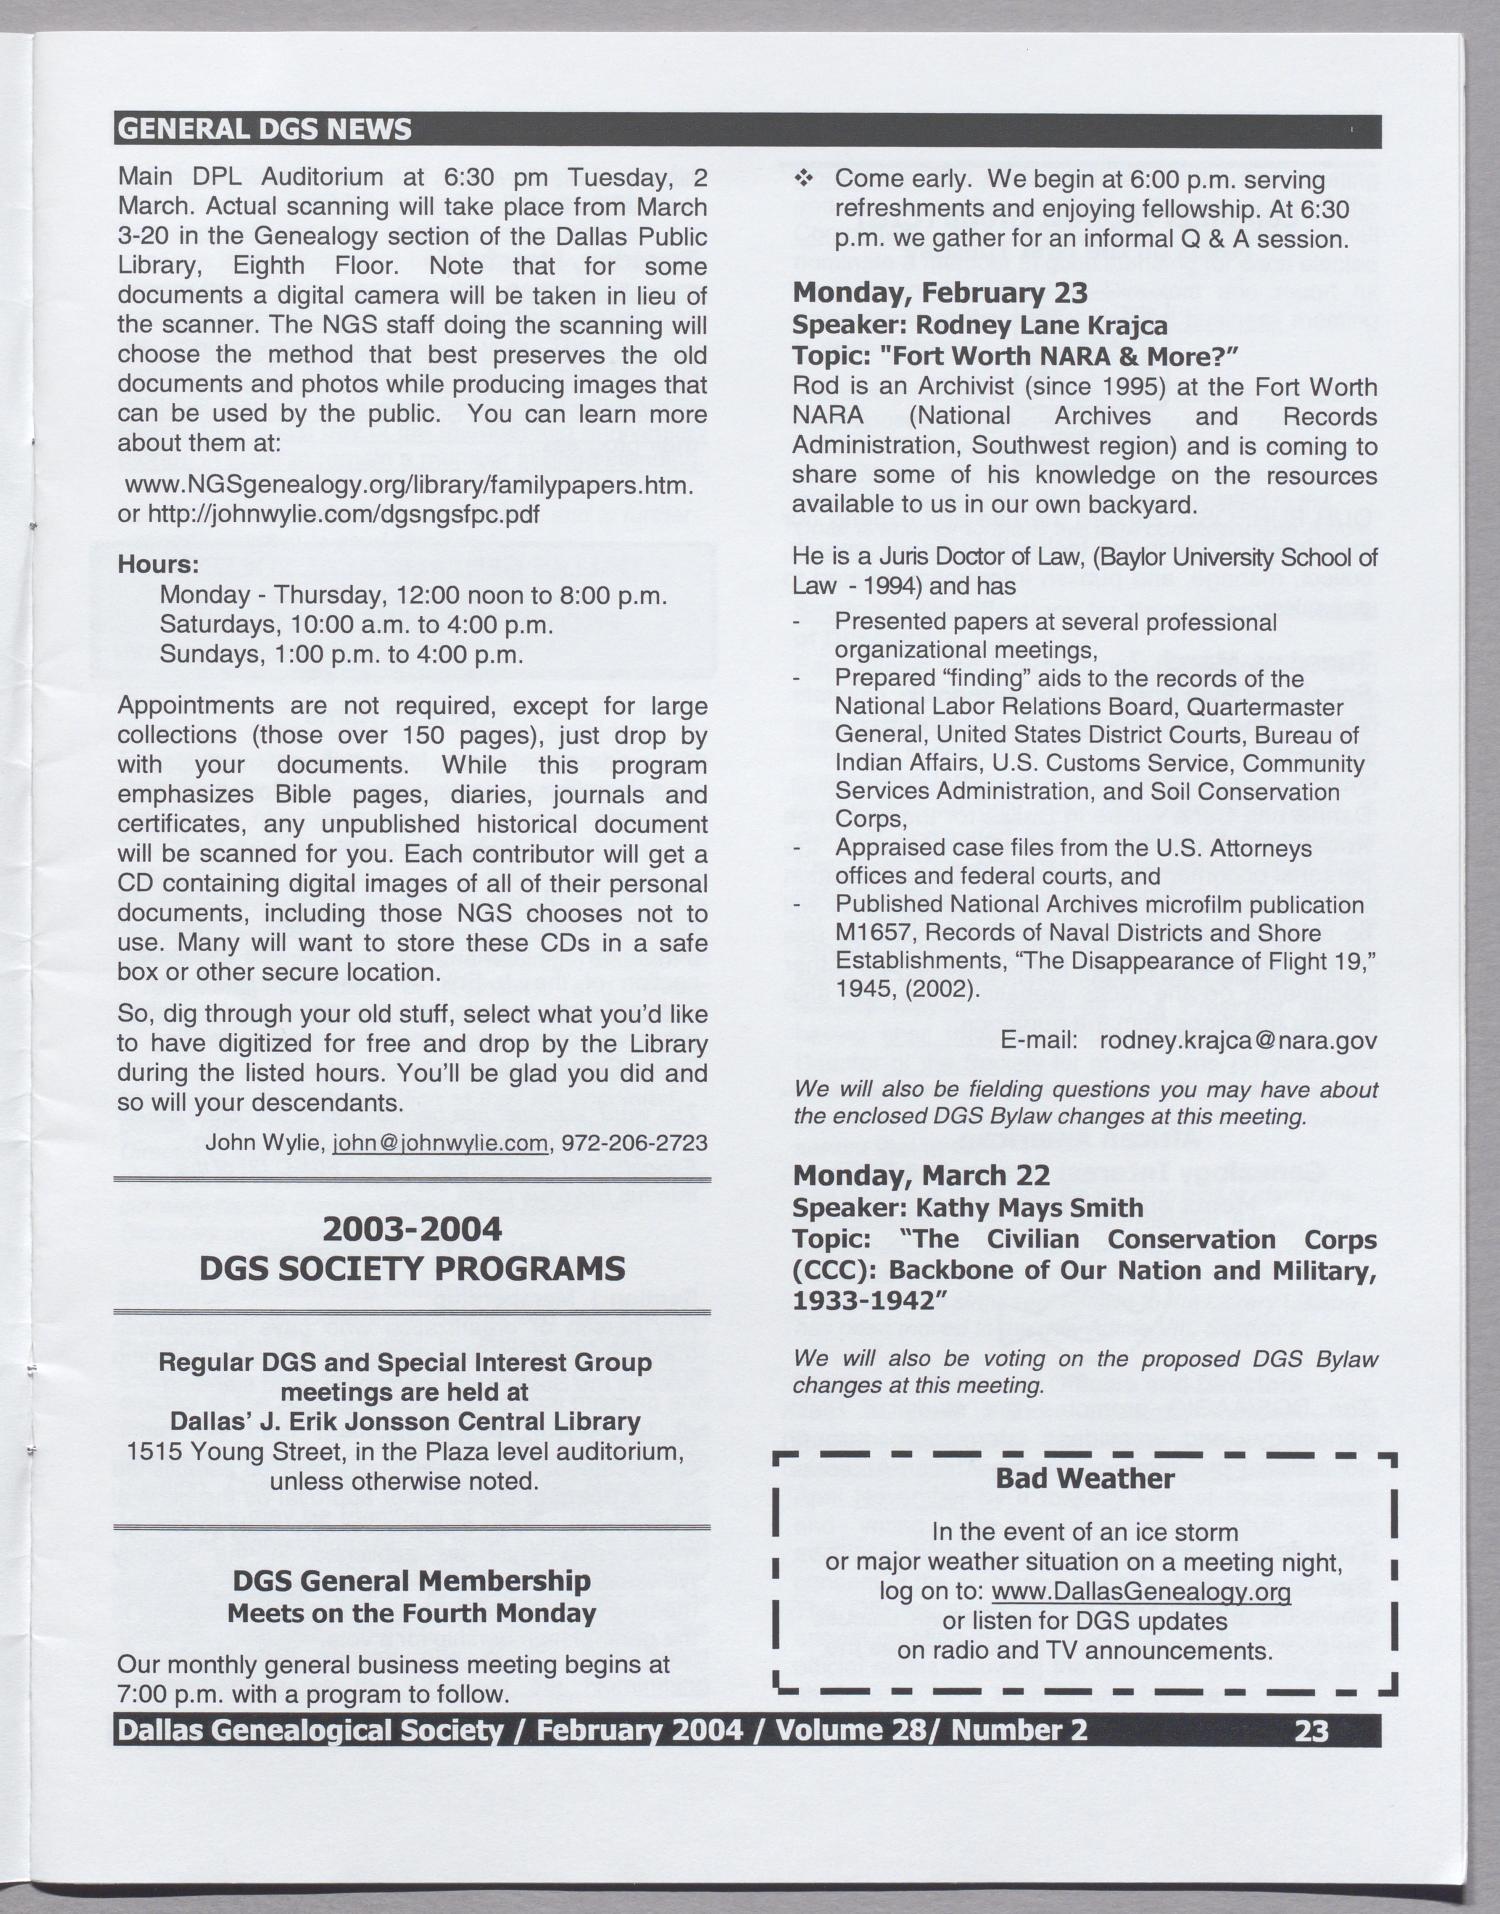 DGS Newsletter, Volume 28, Number 2, February 2004
                                                
                                                    23
                                                